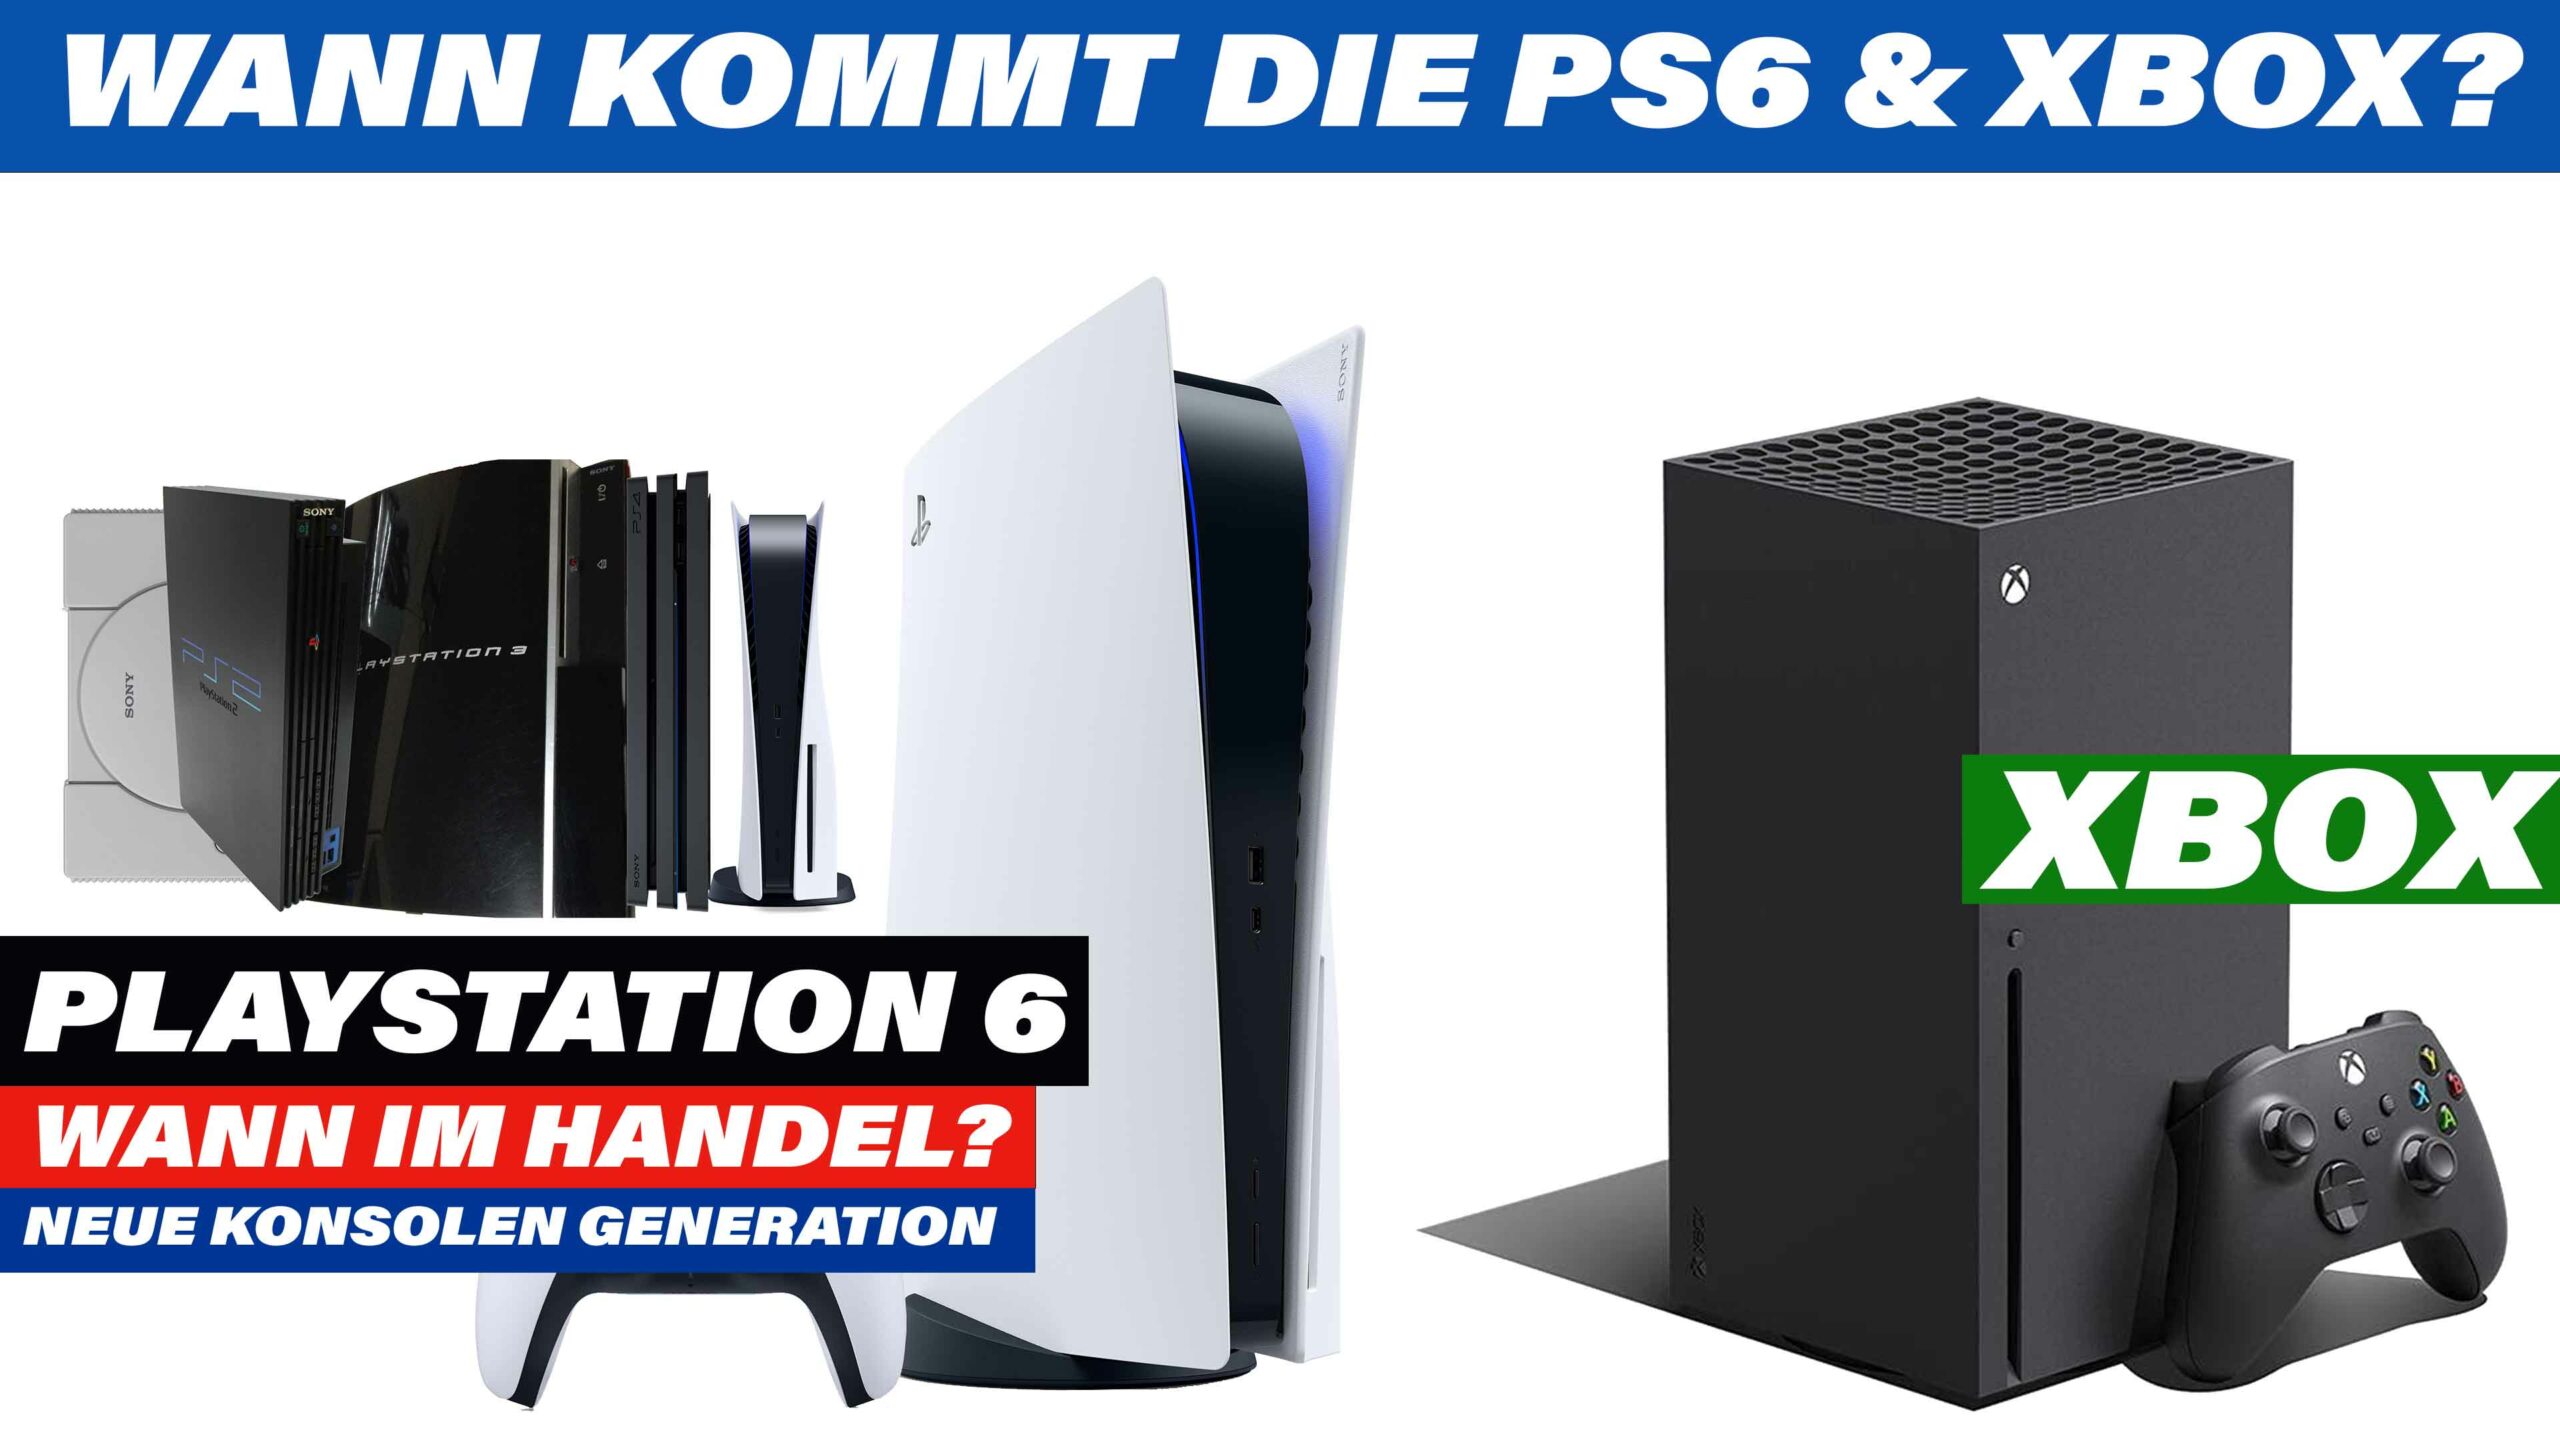 PlayStation 6 | Wann kommt die nächste Konsolen Generation der PS6 &  Xbox auf den Markt? PS6 LEAKS